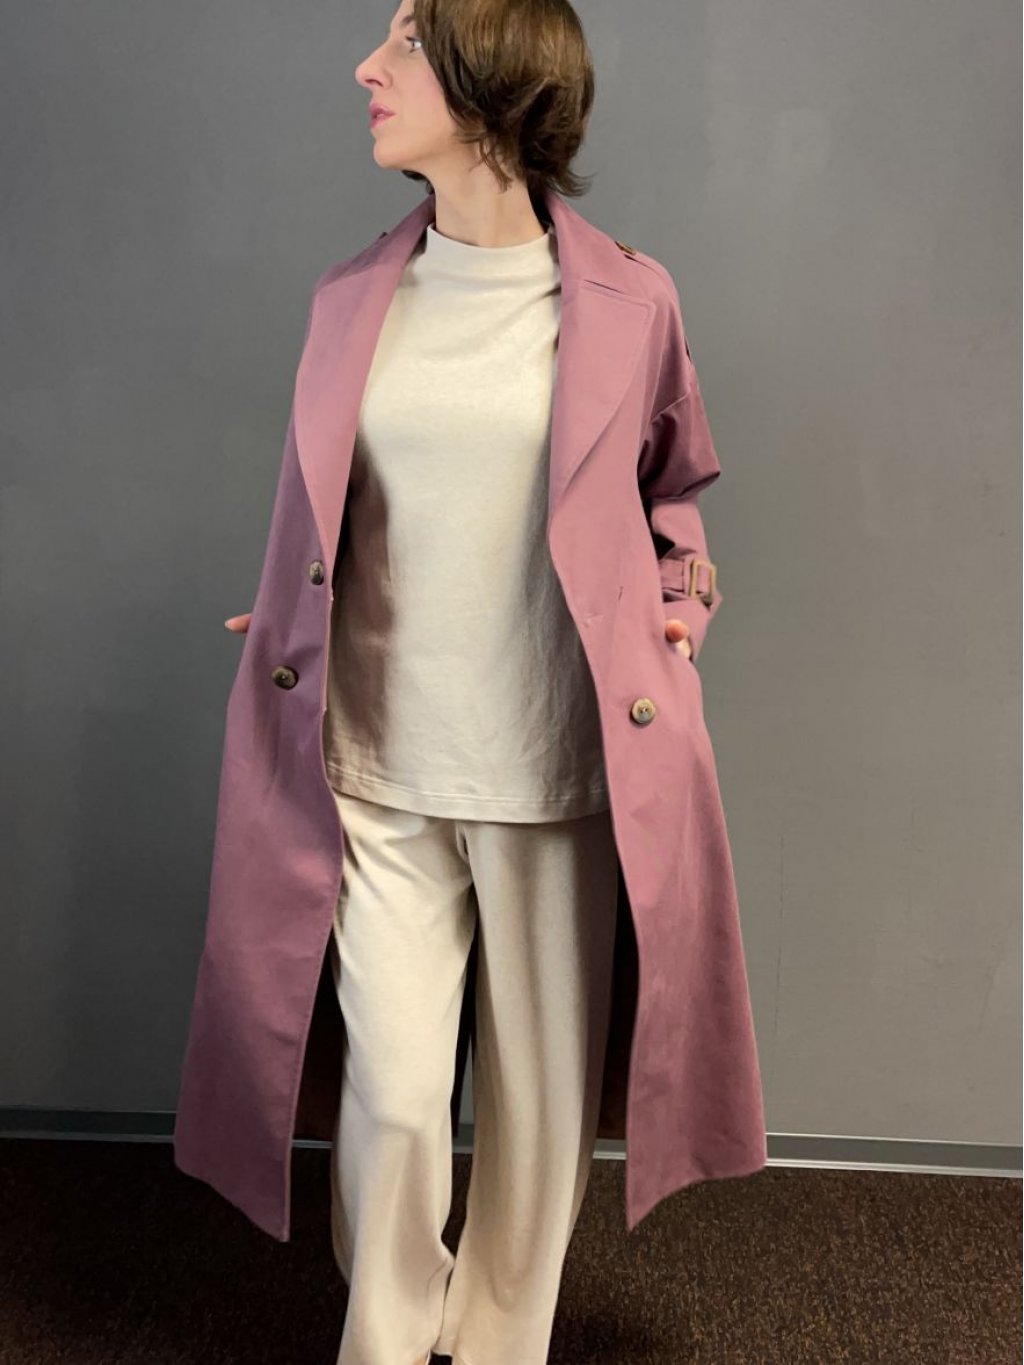 Kabát Tova Monte růžovo-fialkový trenčkot